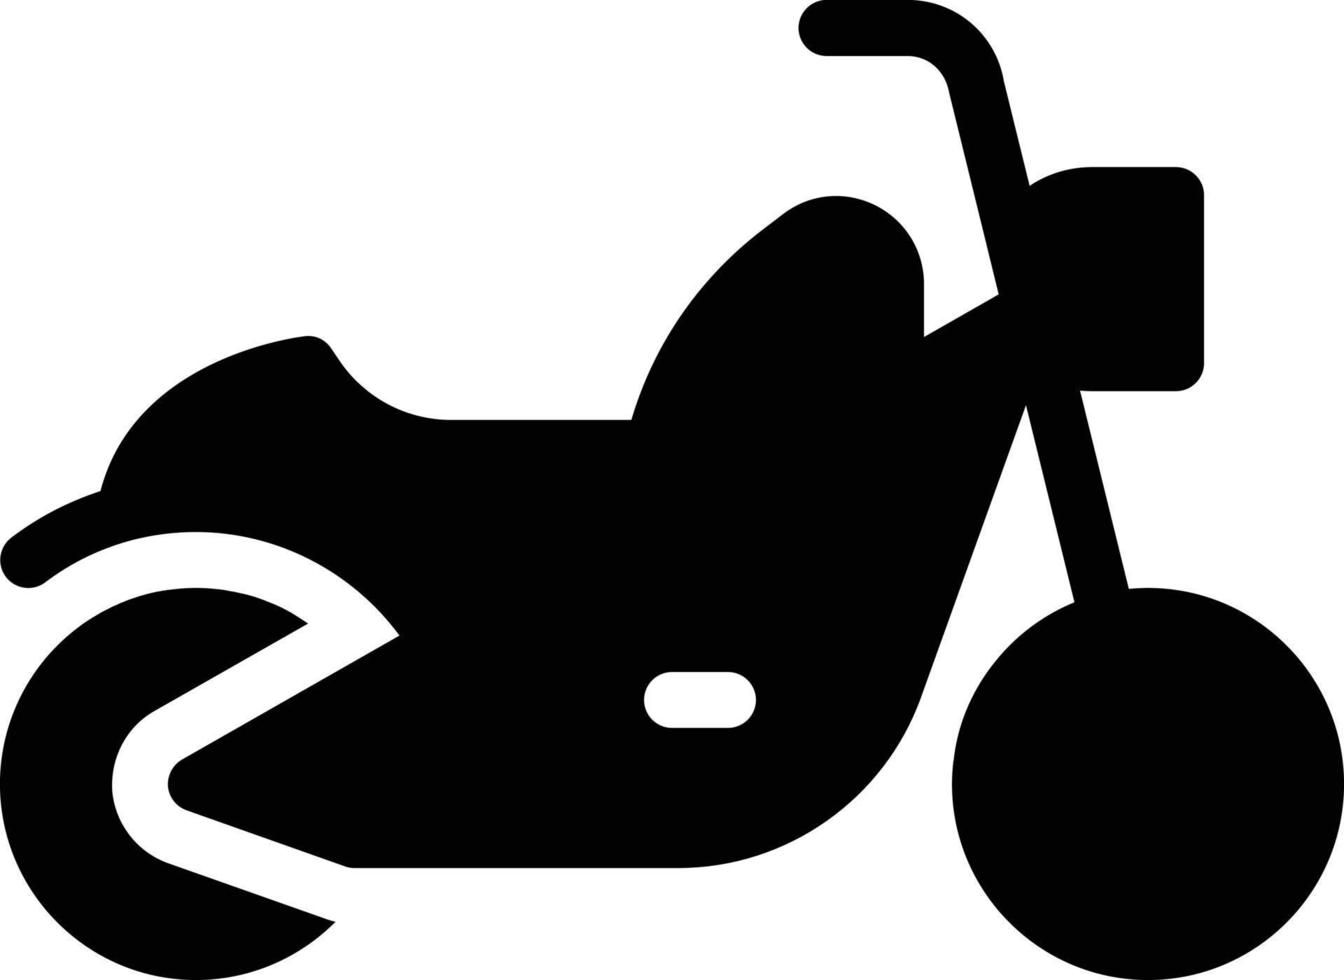 illustrazione vettoriale della motocicletta su uno sfondo simboli di qualità premium. icone vettoriali per il concetto e la progettazione grafica.